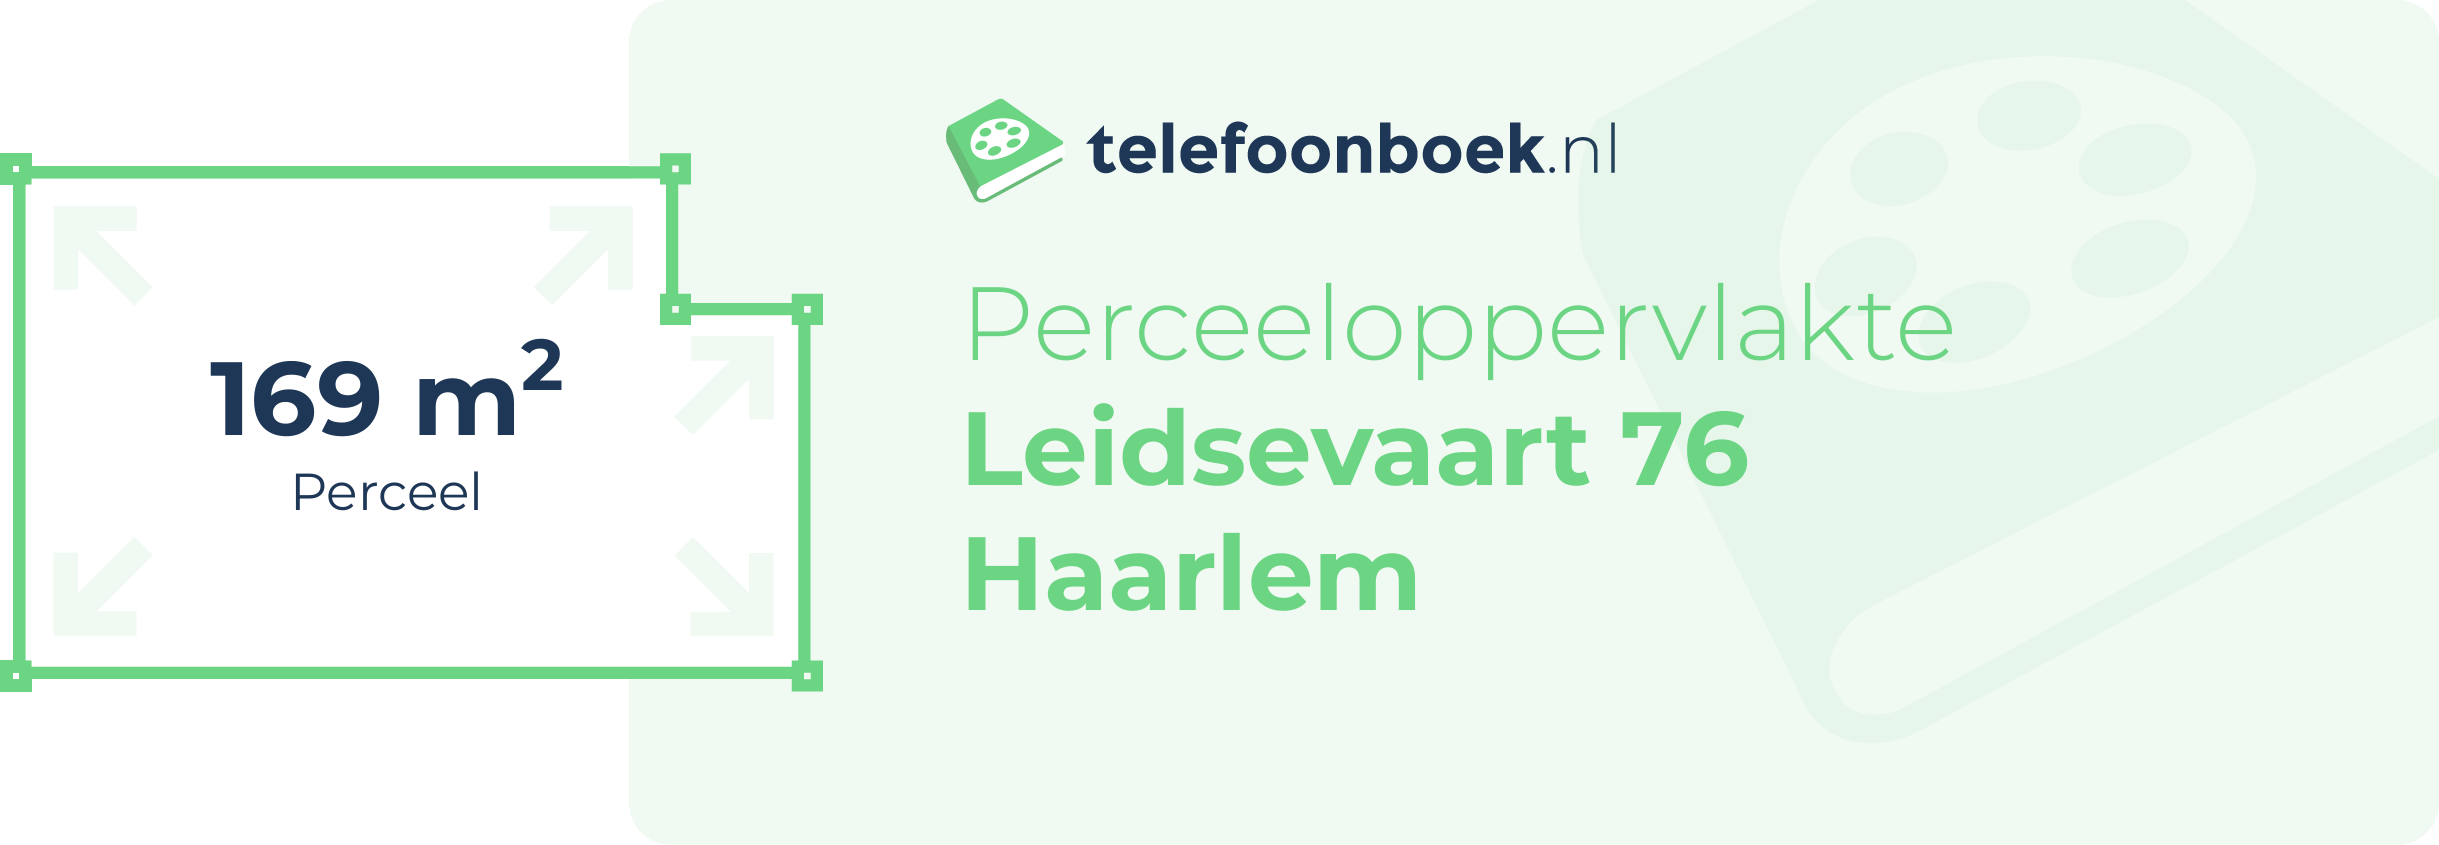 Perceeloppervlakte Leidsevaart 76 Haarlem